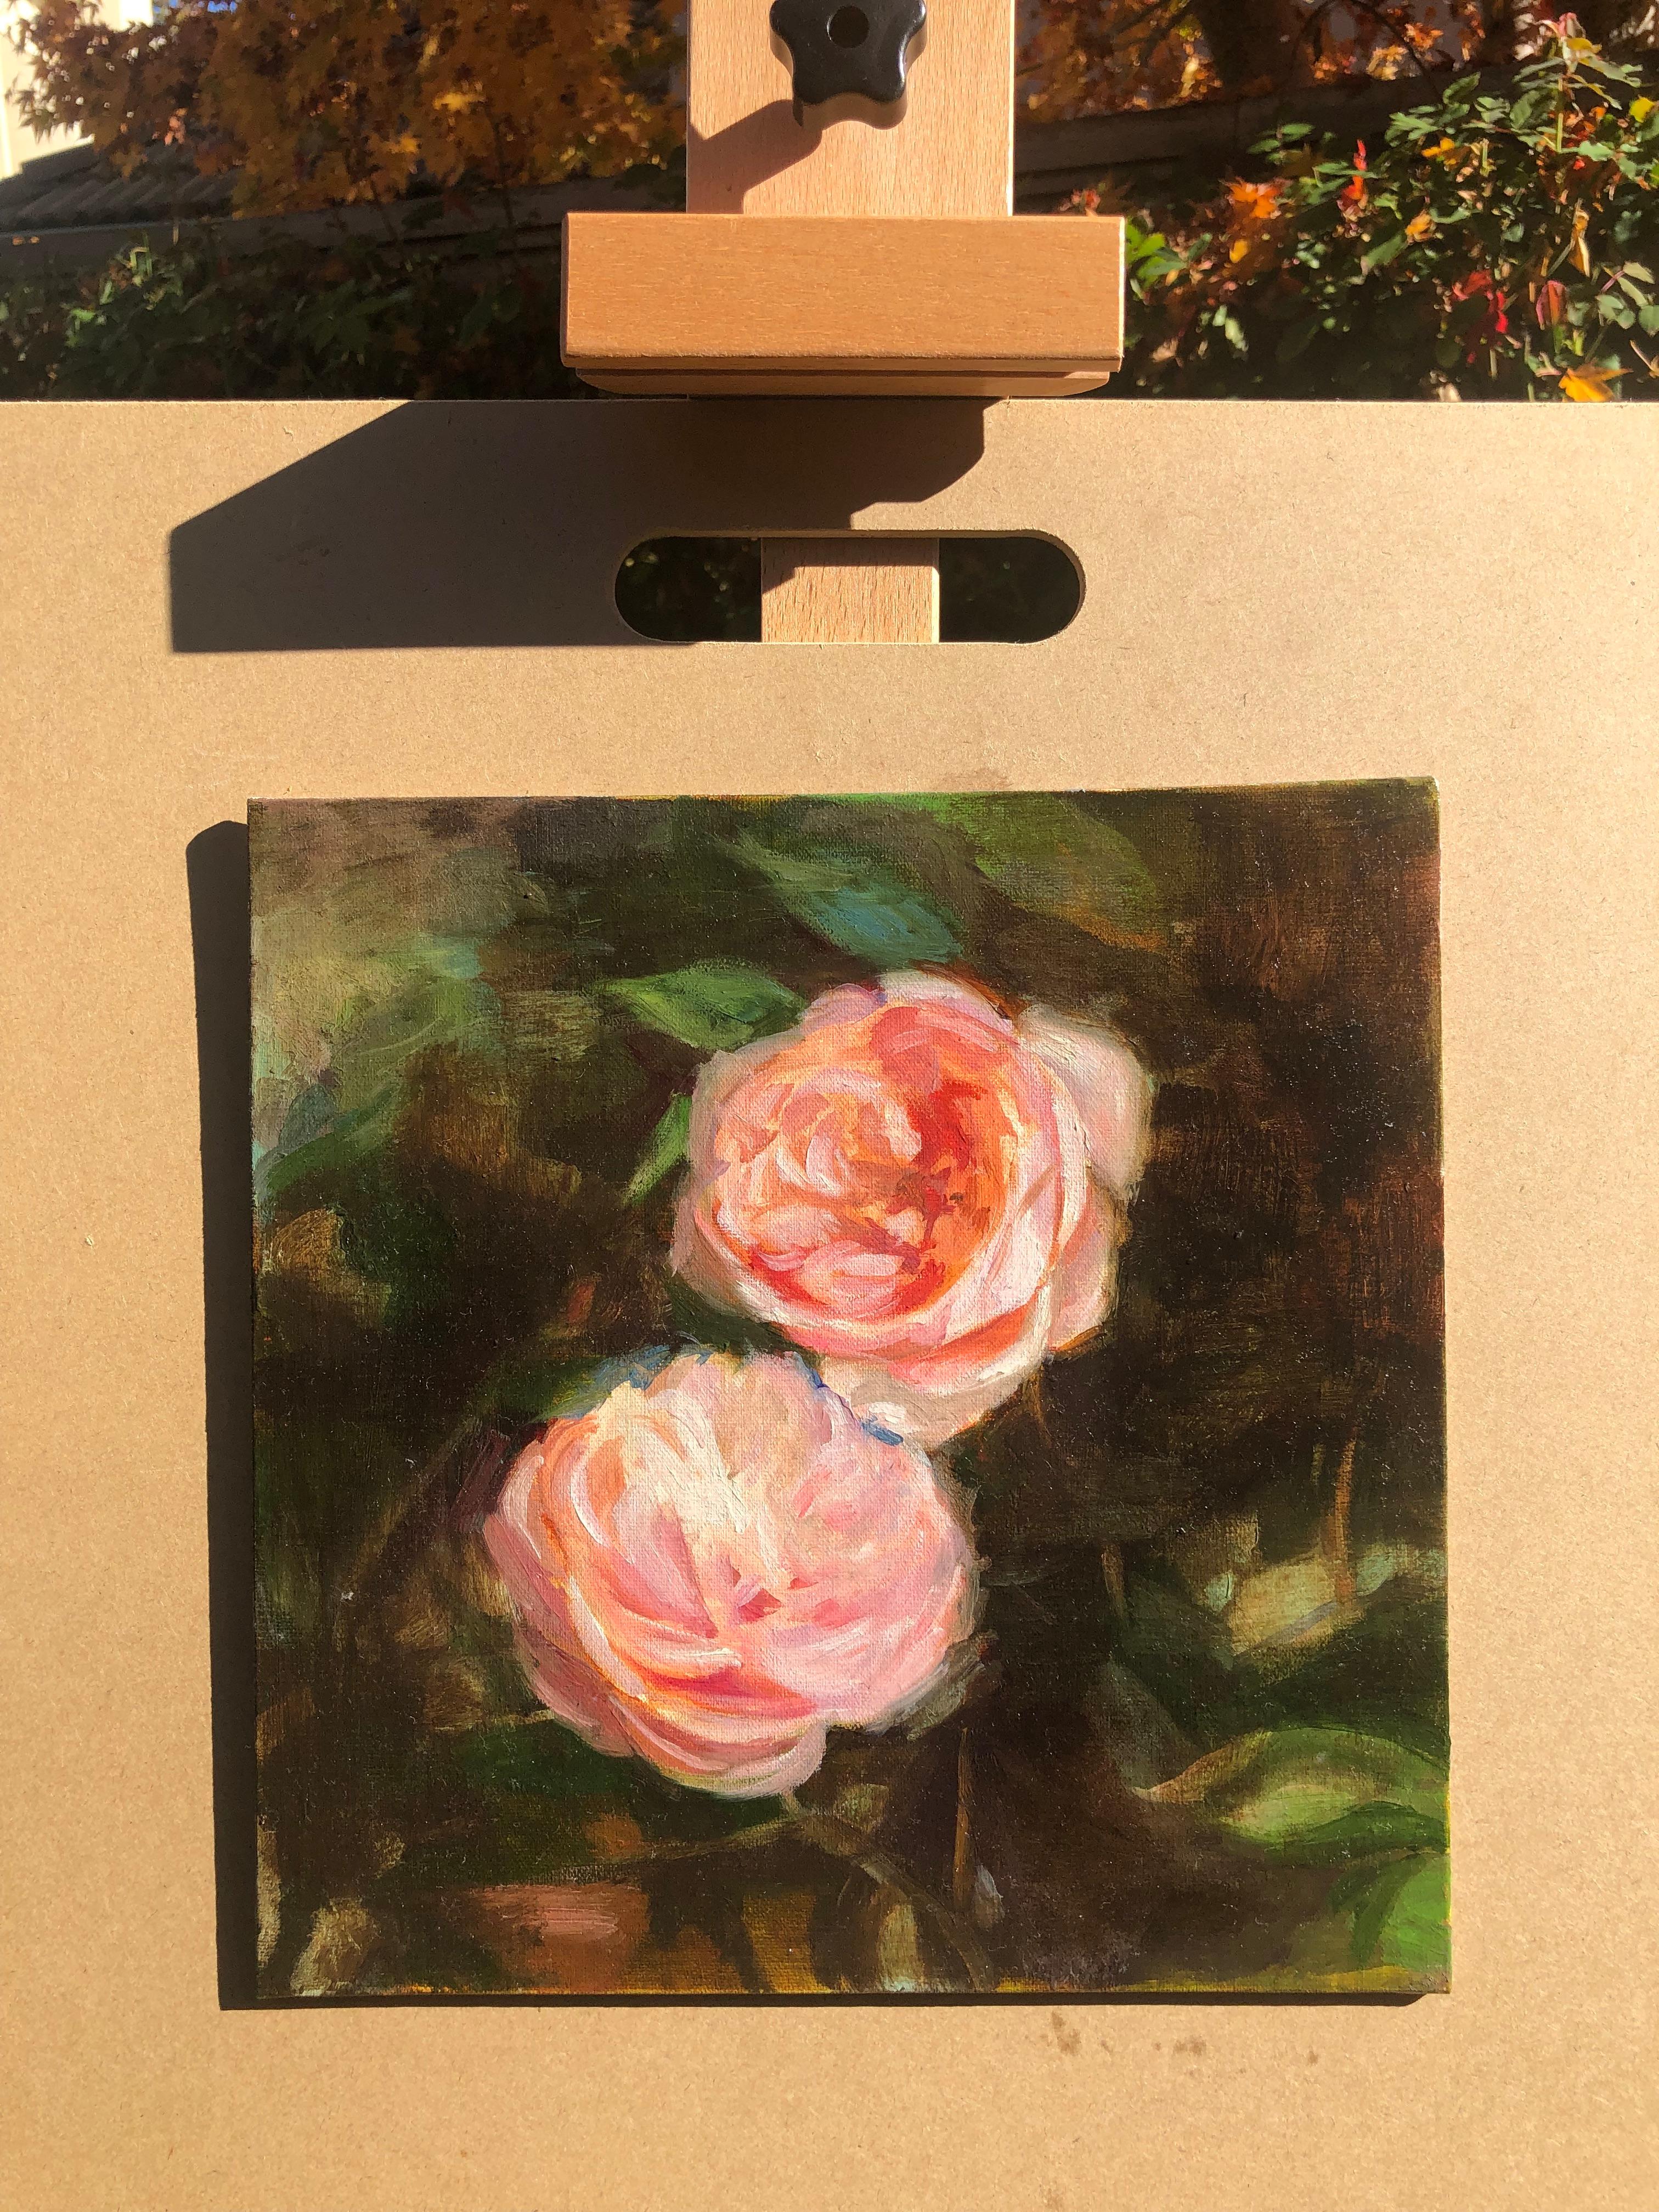 vintage rose painting